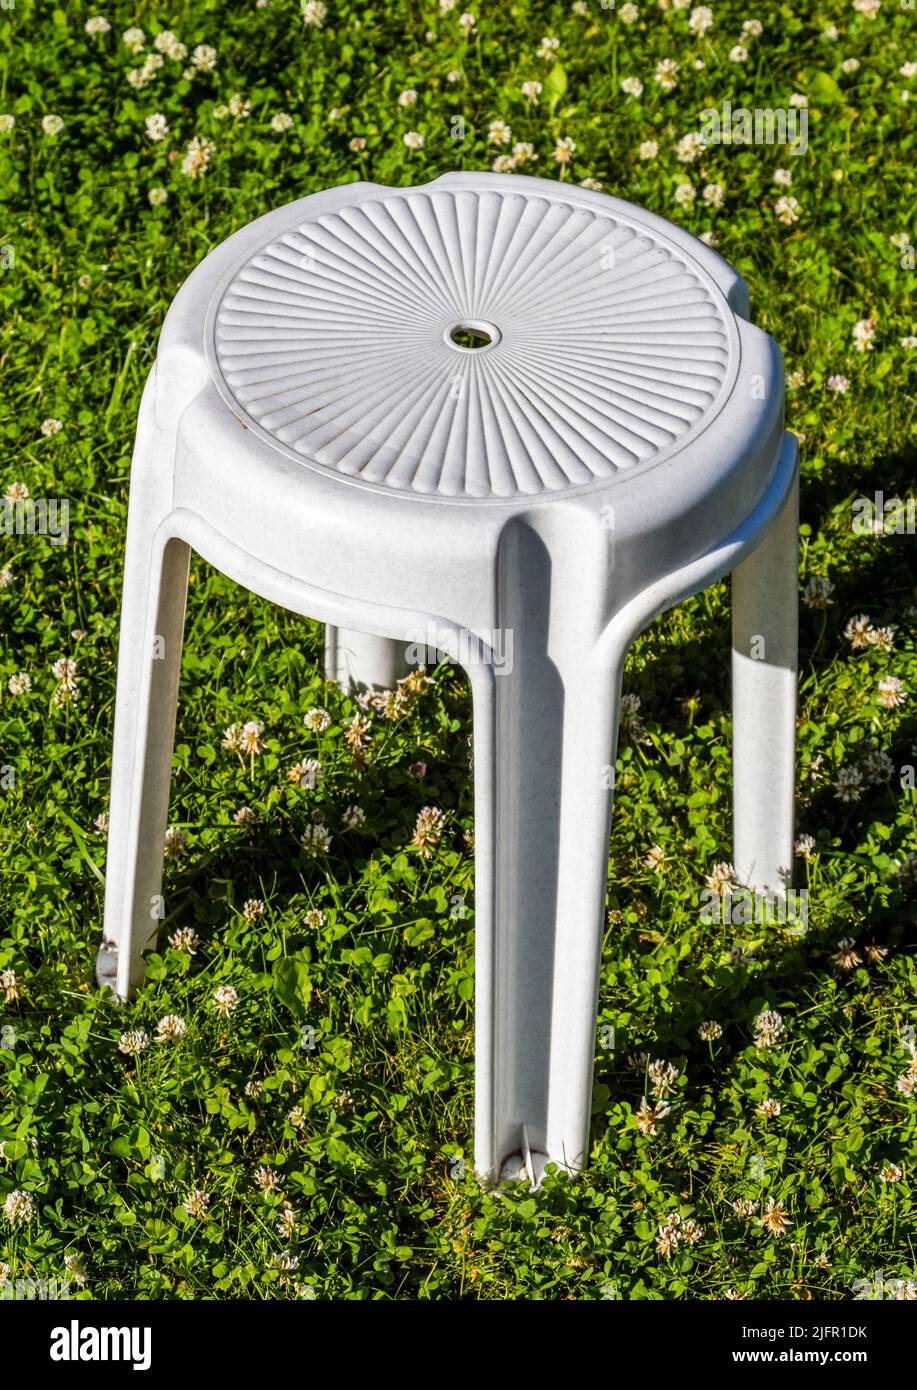 Chaise en plastique blanc gros plan sur un fond d'herbe verte Banque D'Images